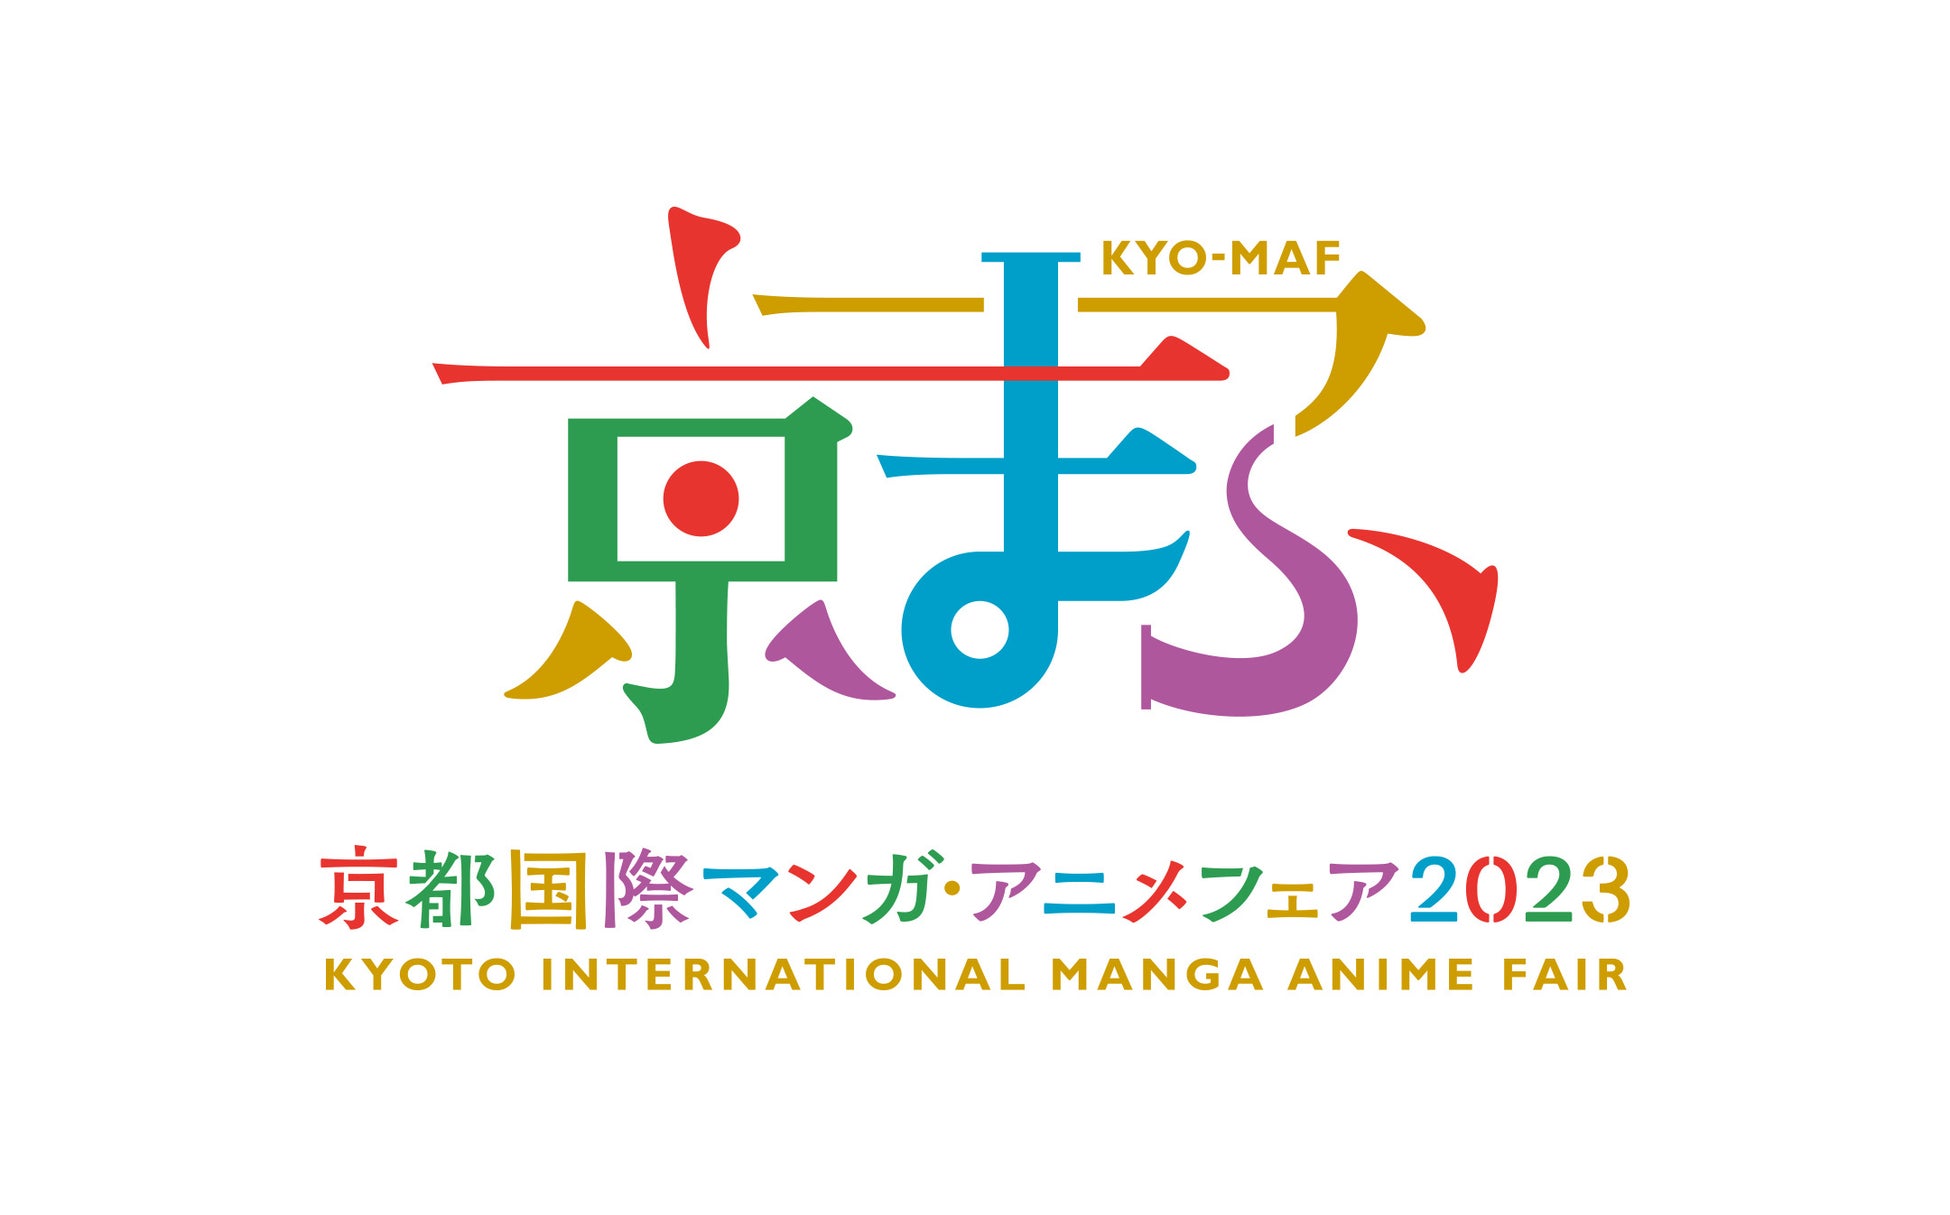 ―文化庁移転記念―京まふ 京都国際マンガ・アニメフェア2023の開催概要及び入場券の販売開始について